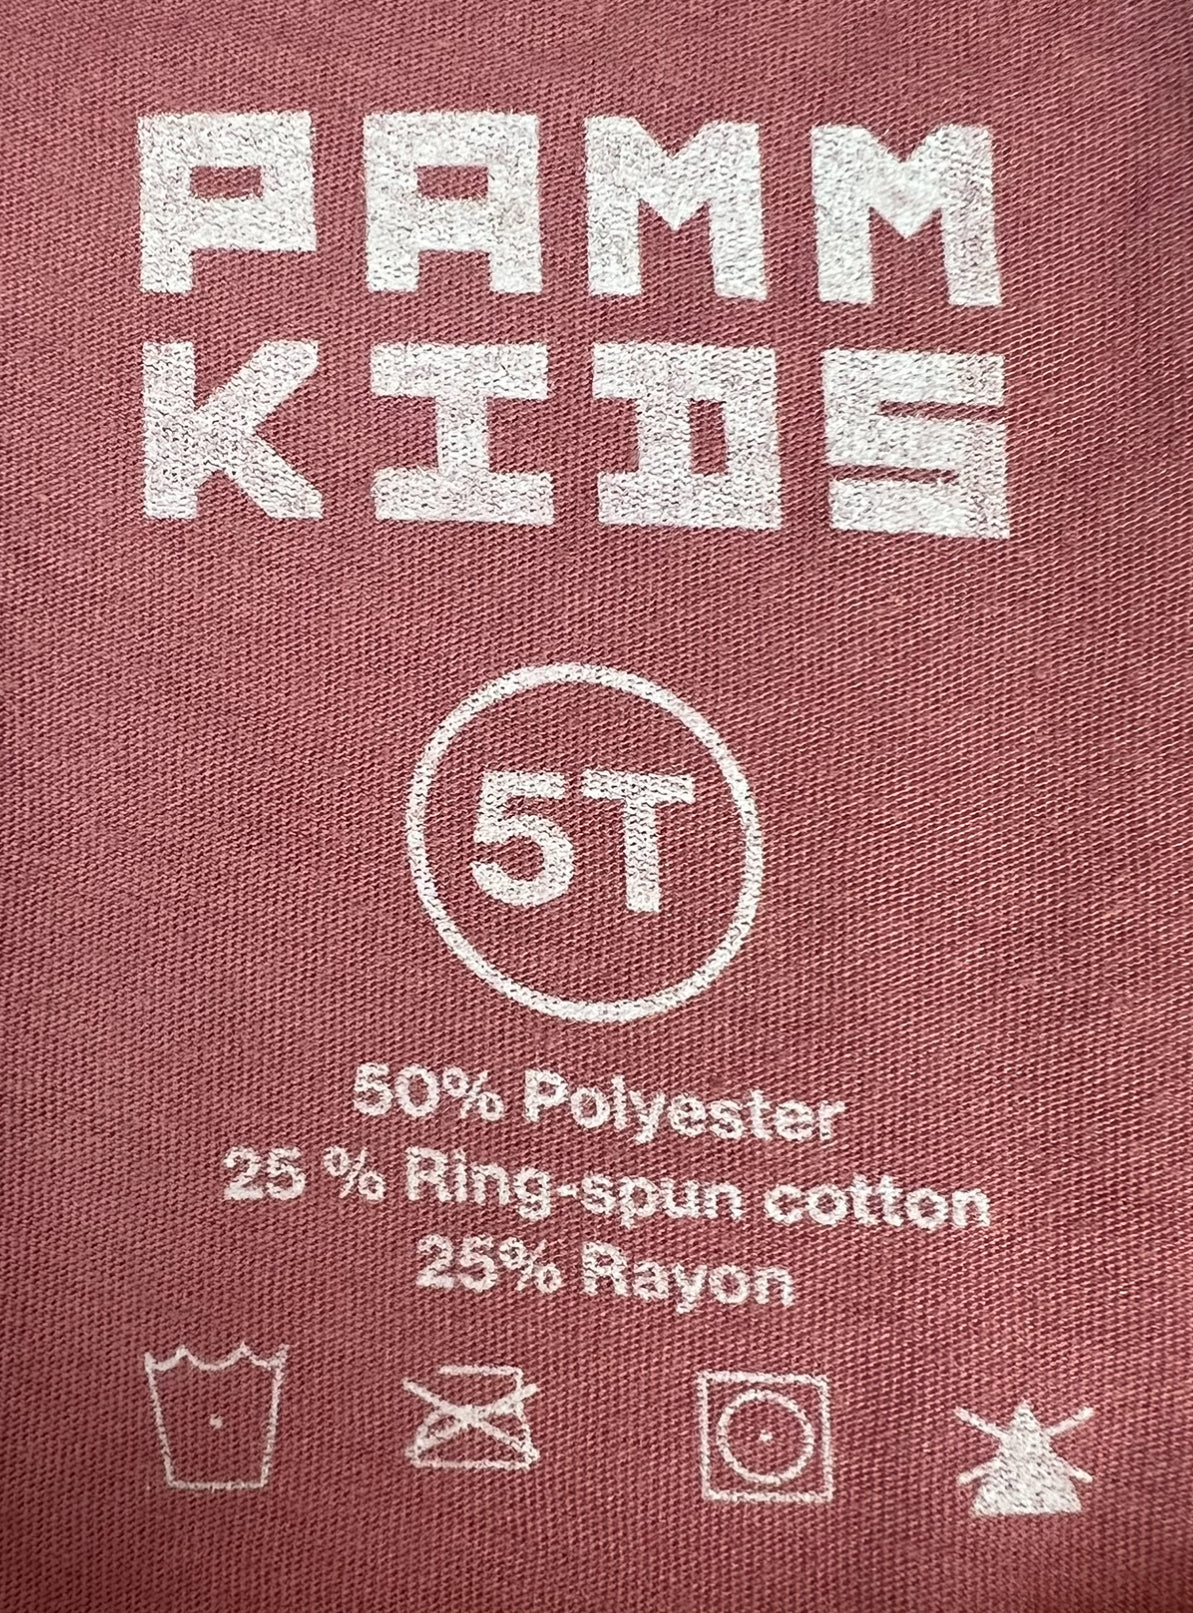 Pamm Kids Elephant T-Shirt (Toddler)